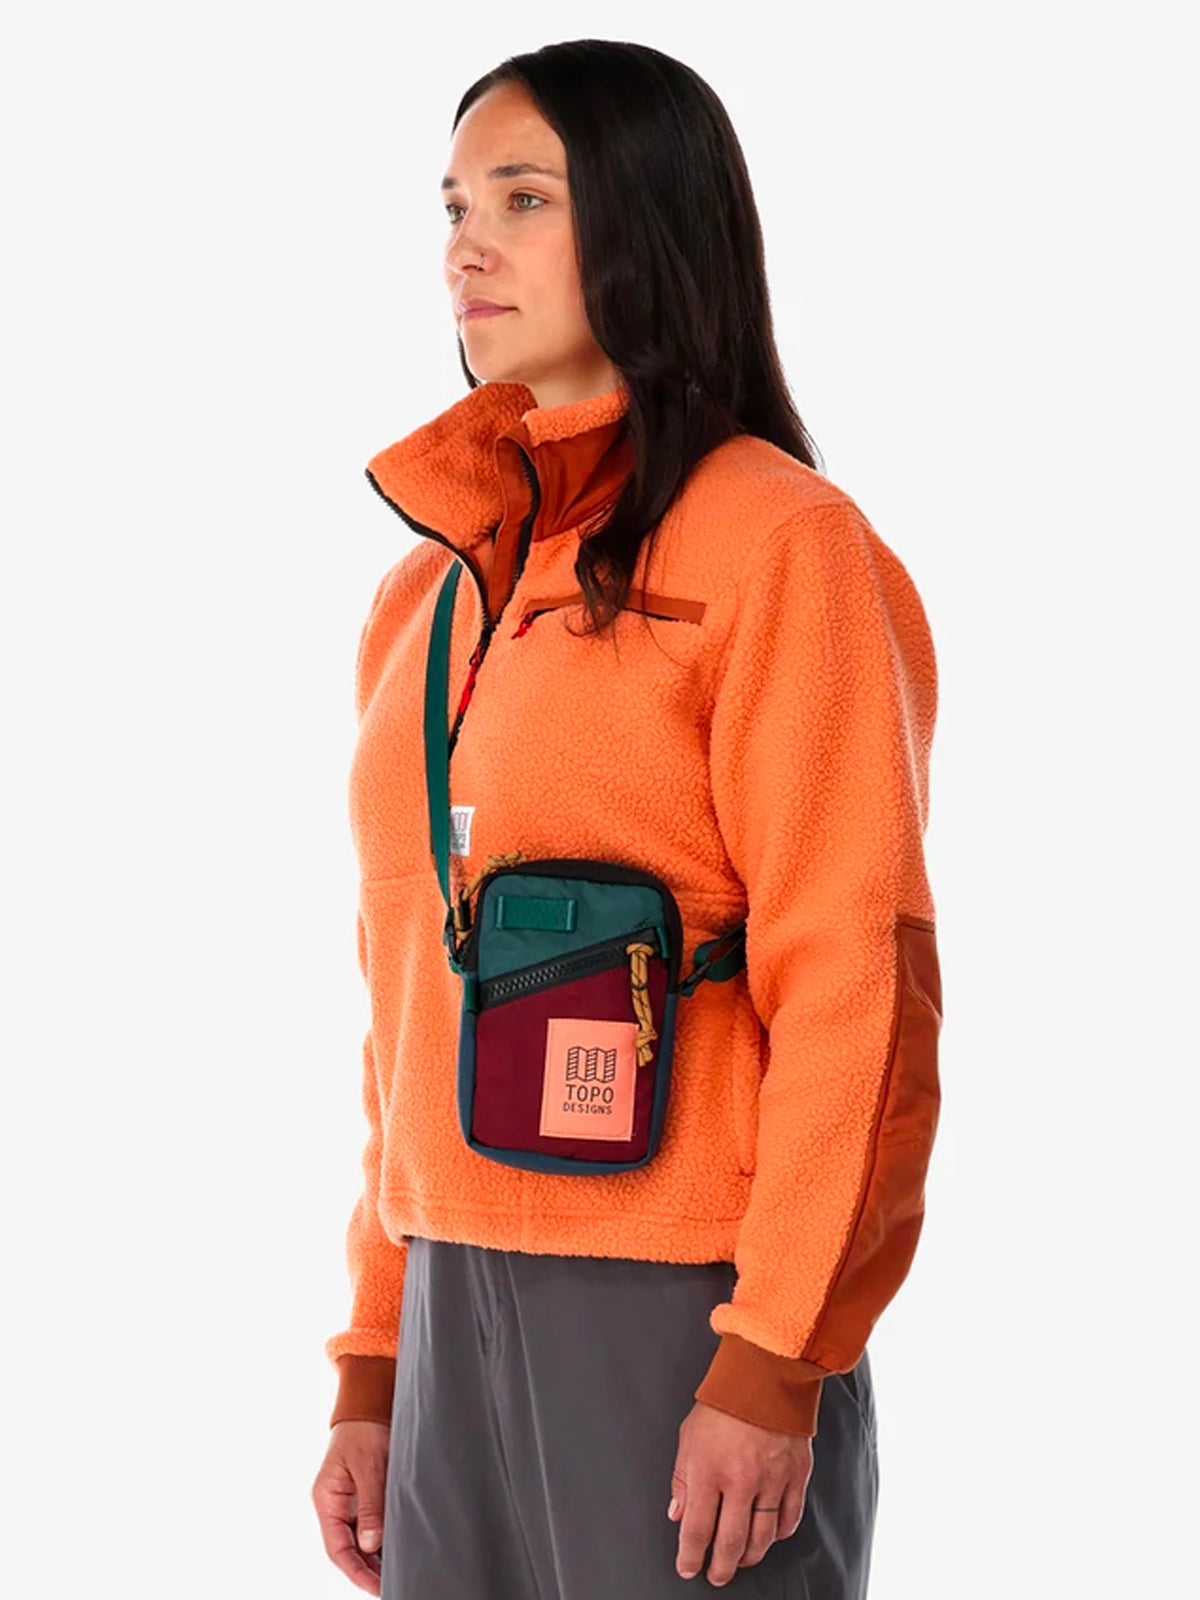 Topo Designs Mini Shoulder Bag Light Green